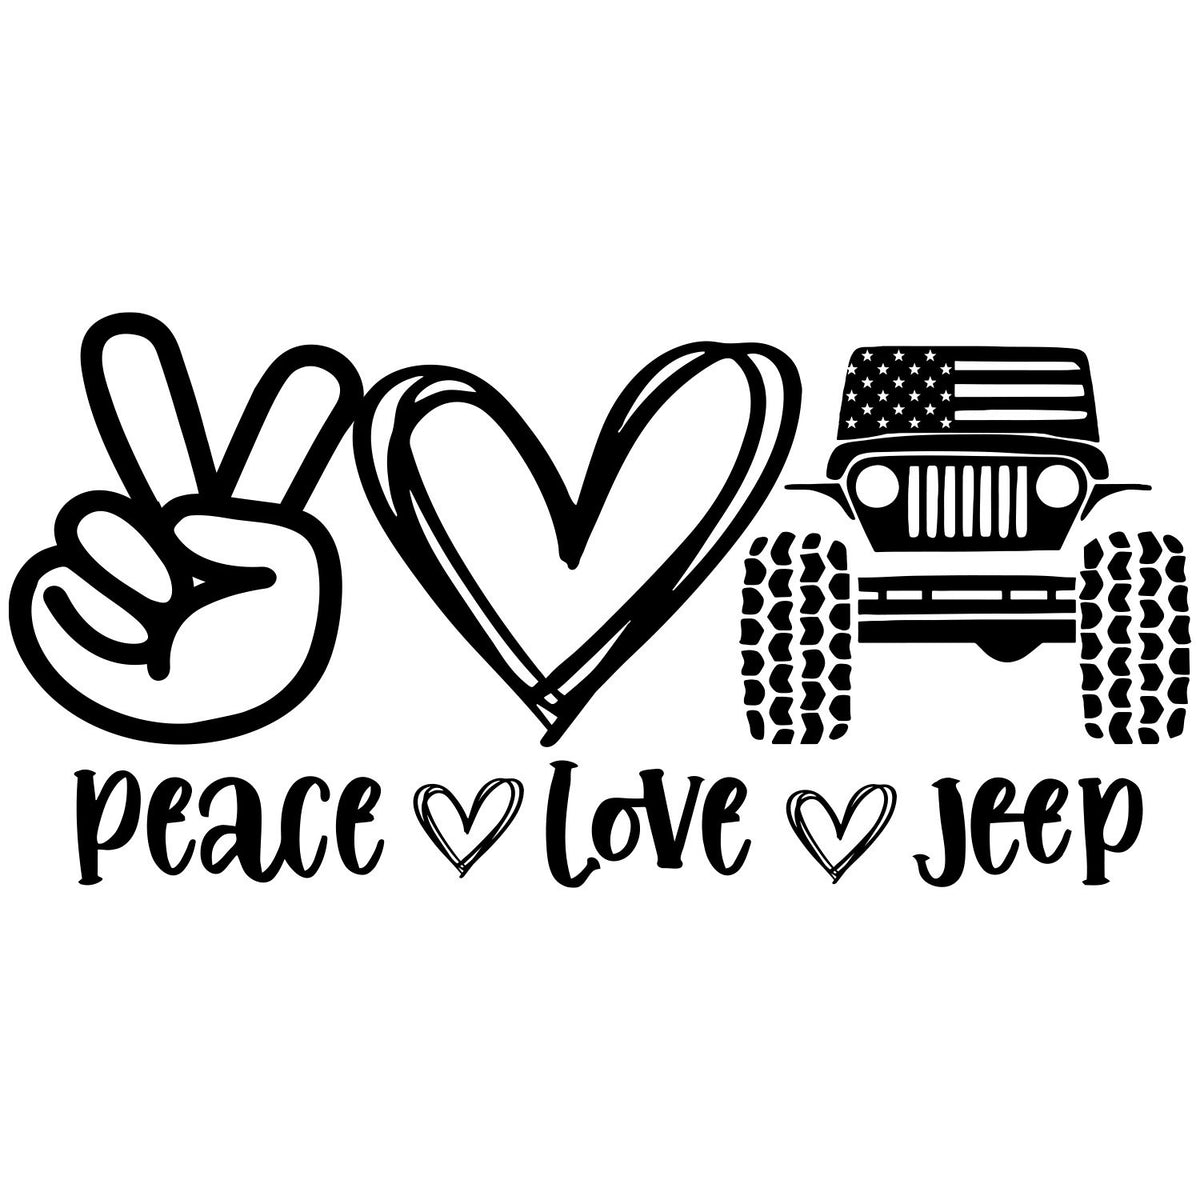 Peace love jeep tumbler